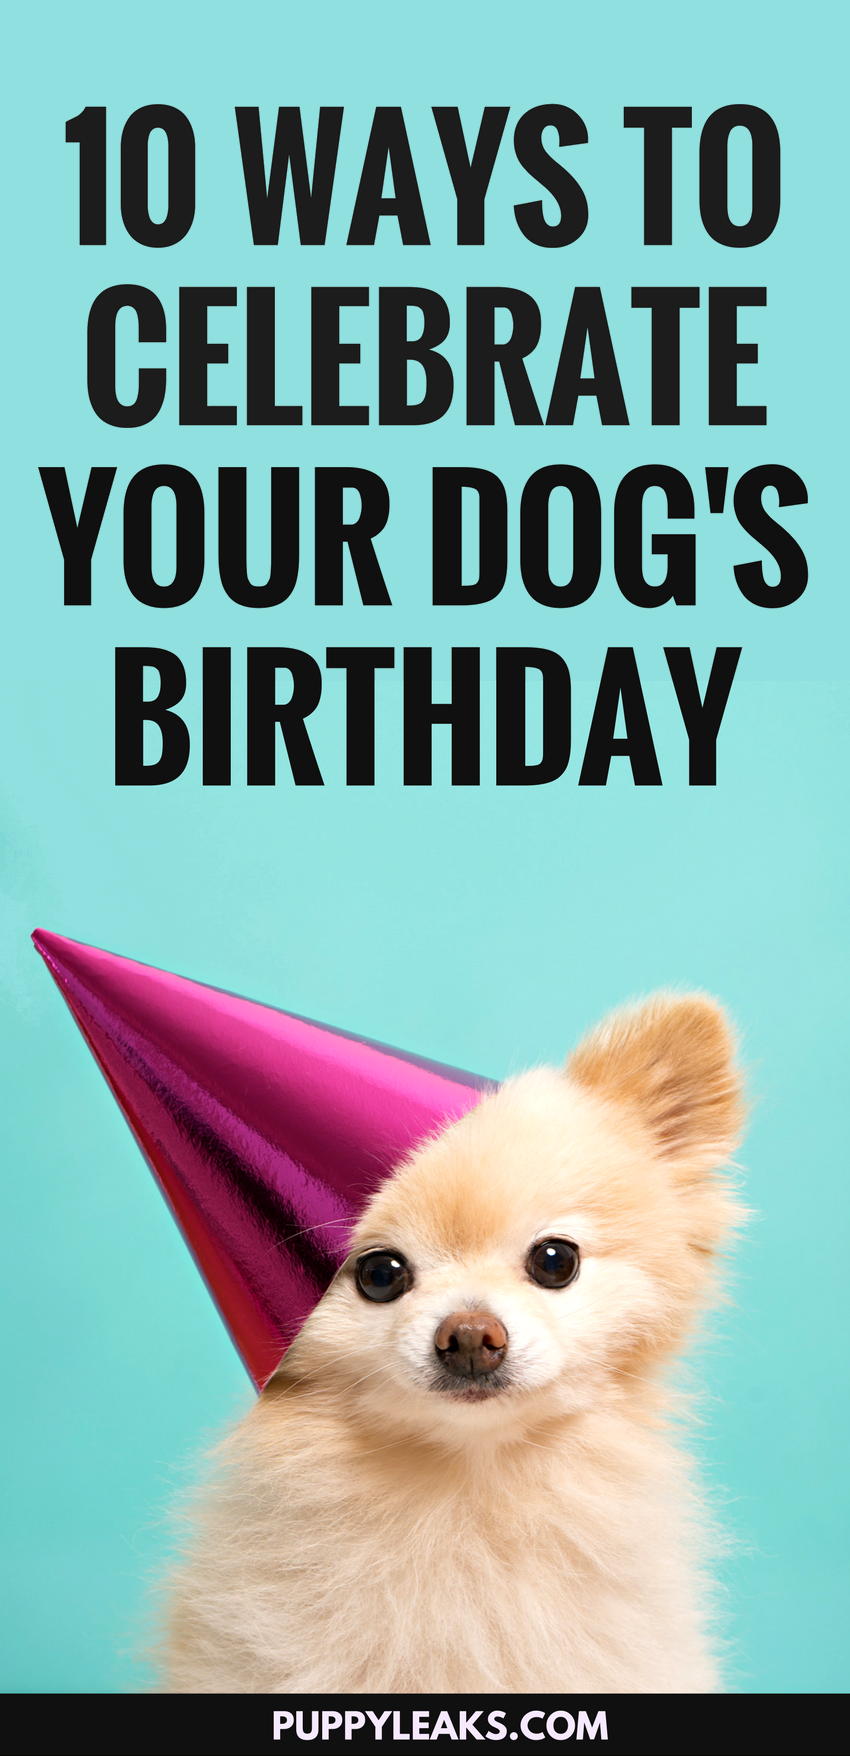 강아지의 생일을 축하하는 10가지 재미있는 방법